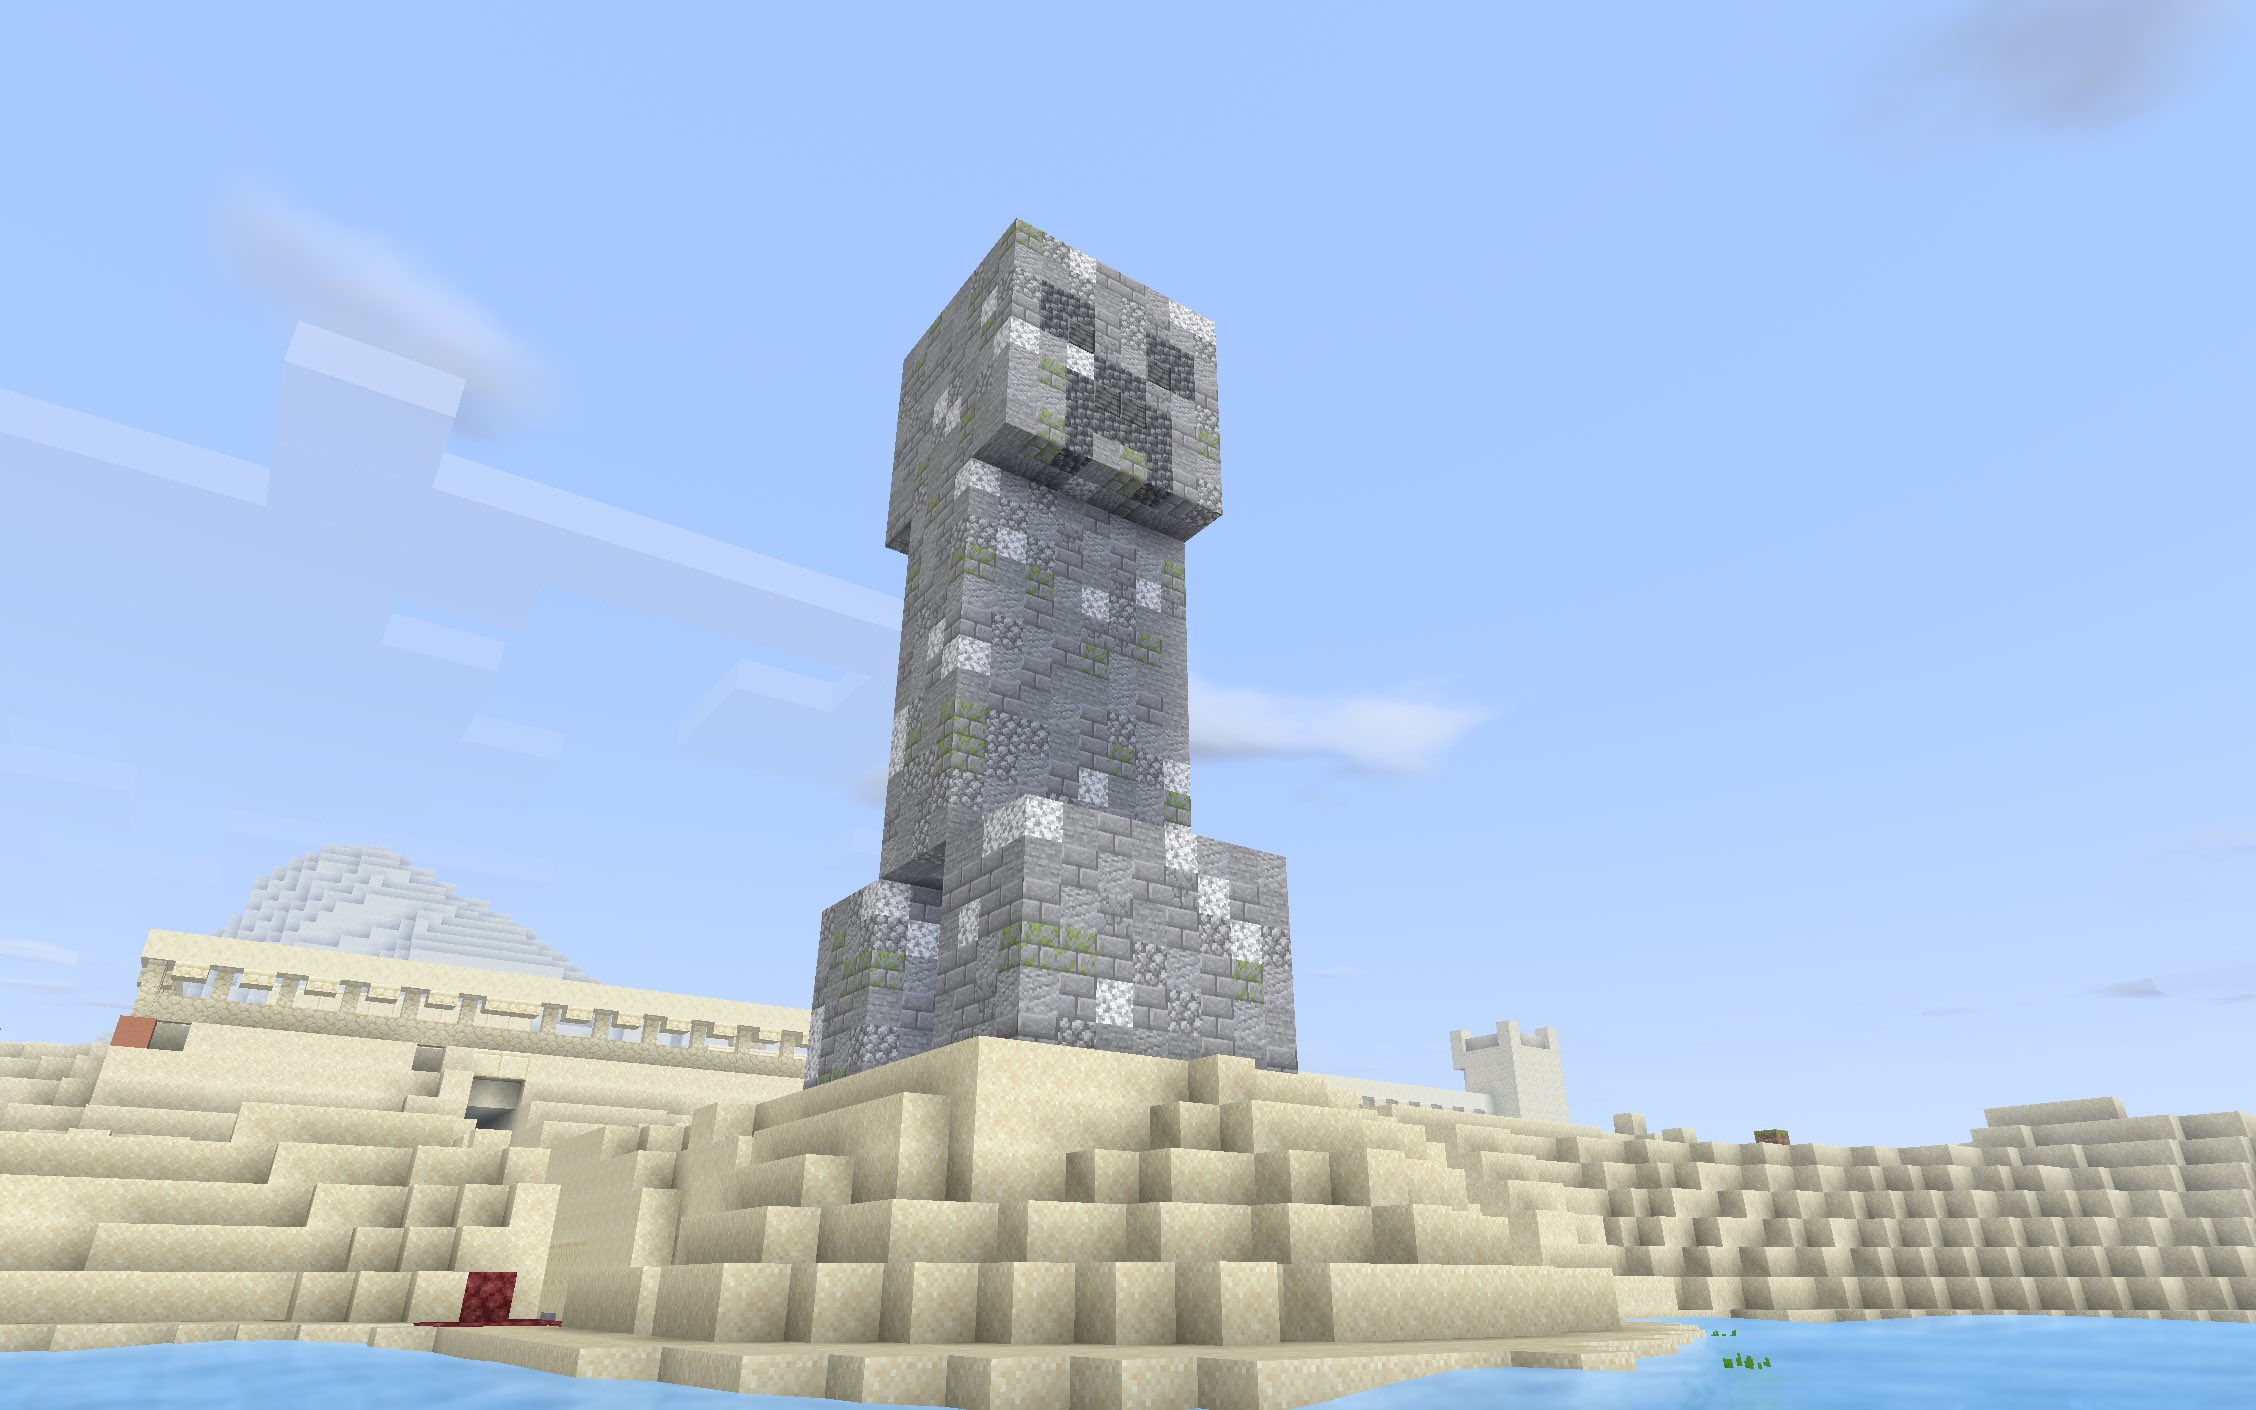 梟巣 亜月 Minecraft クリーパーの石像を建てました 中にはtntが詰まっているとかどうとか Jeハードサバイバル マインクラフト T Co 7vtvbweajz Twitter